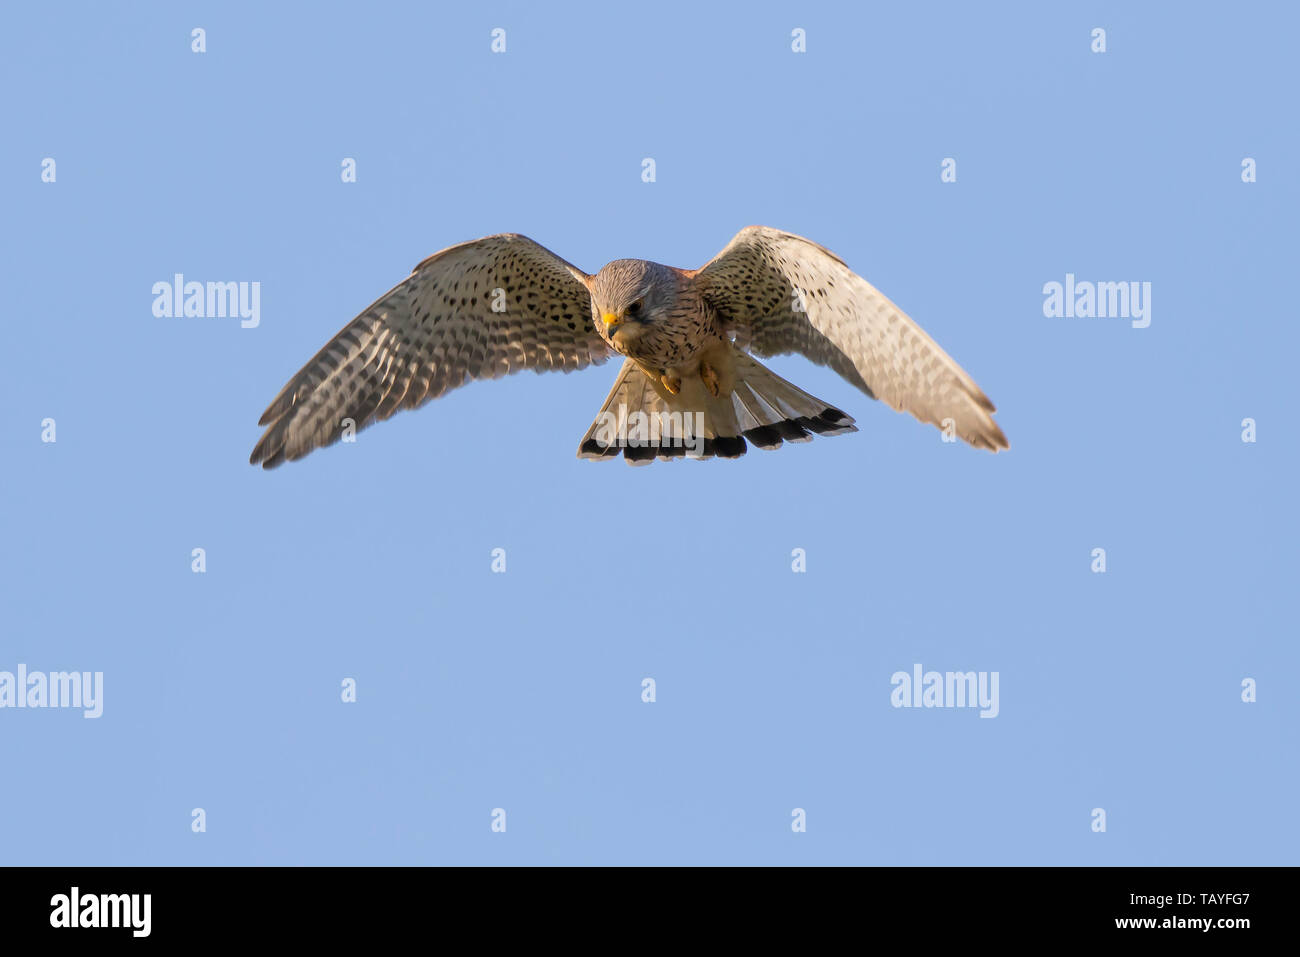 Detaillierte Nahaufnahme der Jagd auf den wilden UK-Turmfalken-Greifvogel (Falco tinnunculus). Falcon isoliert in der Luft, schwebend, Flügel in blauen Himmel ausgebreitet. Stockfoto